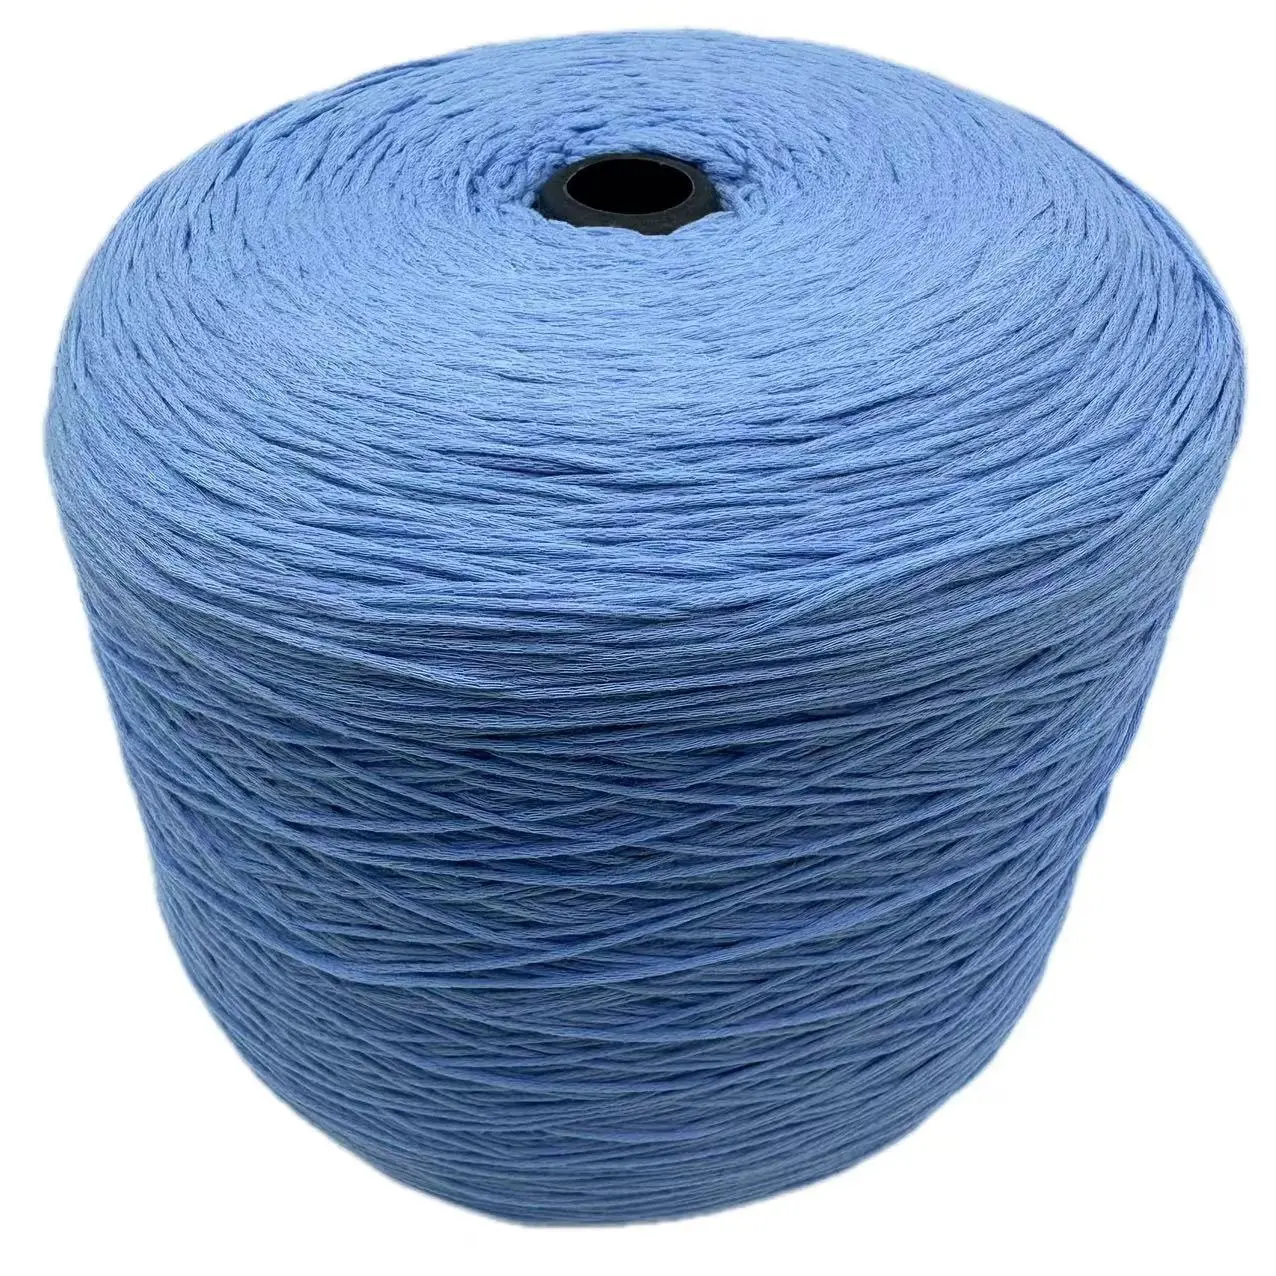 Fil couvert nu fantaisie 1/4.5 NM 60% coton 40% Nylon printemps été fil au Crochet pour cardigan à tricoter